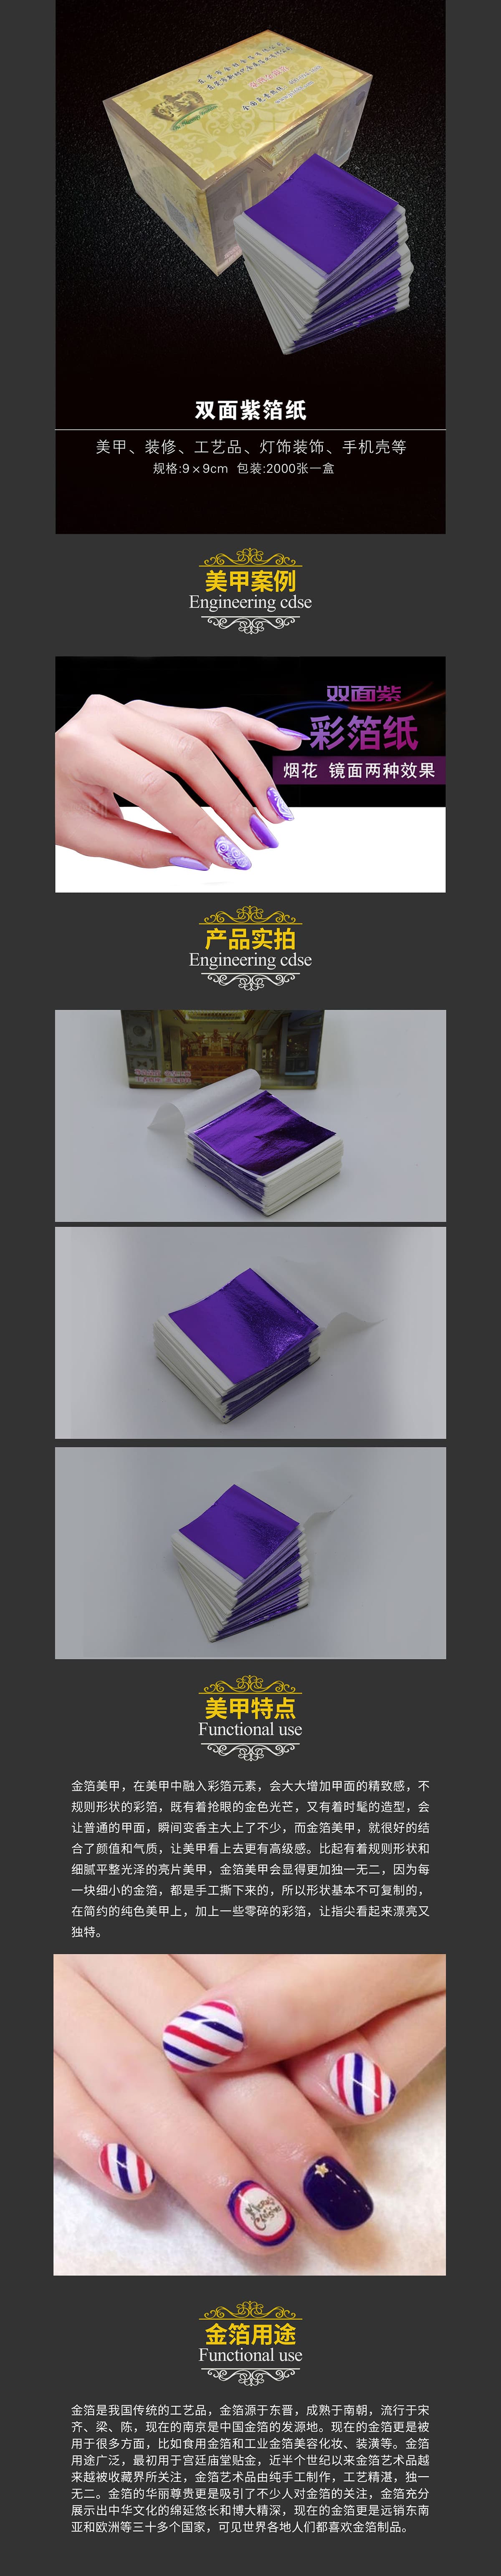 双面紫箔纸.jpg